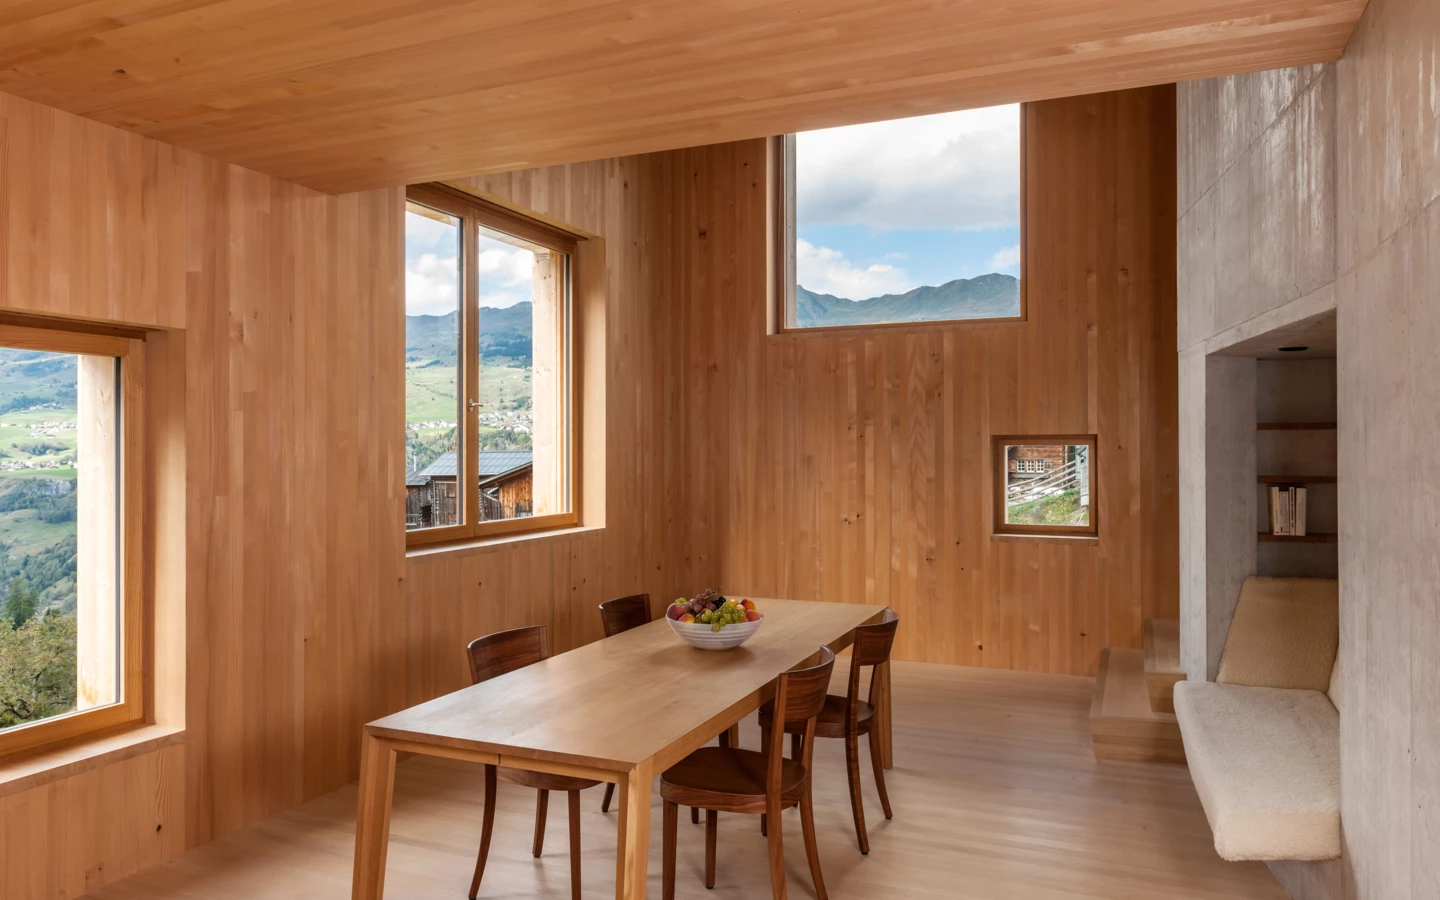 Einfamilienhaus Hoerler Sohm HolzBautechnik Innenraum aus Holz mit Tisch und Stühlen